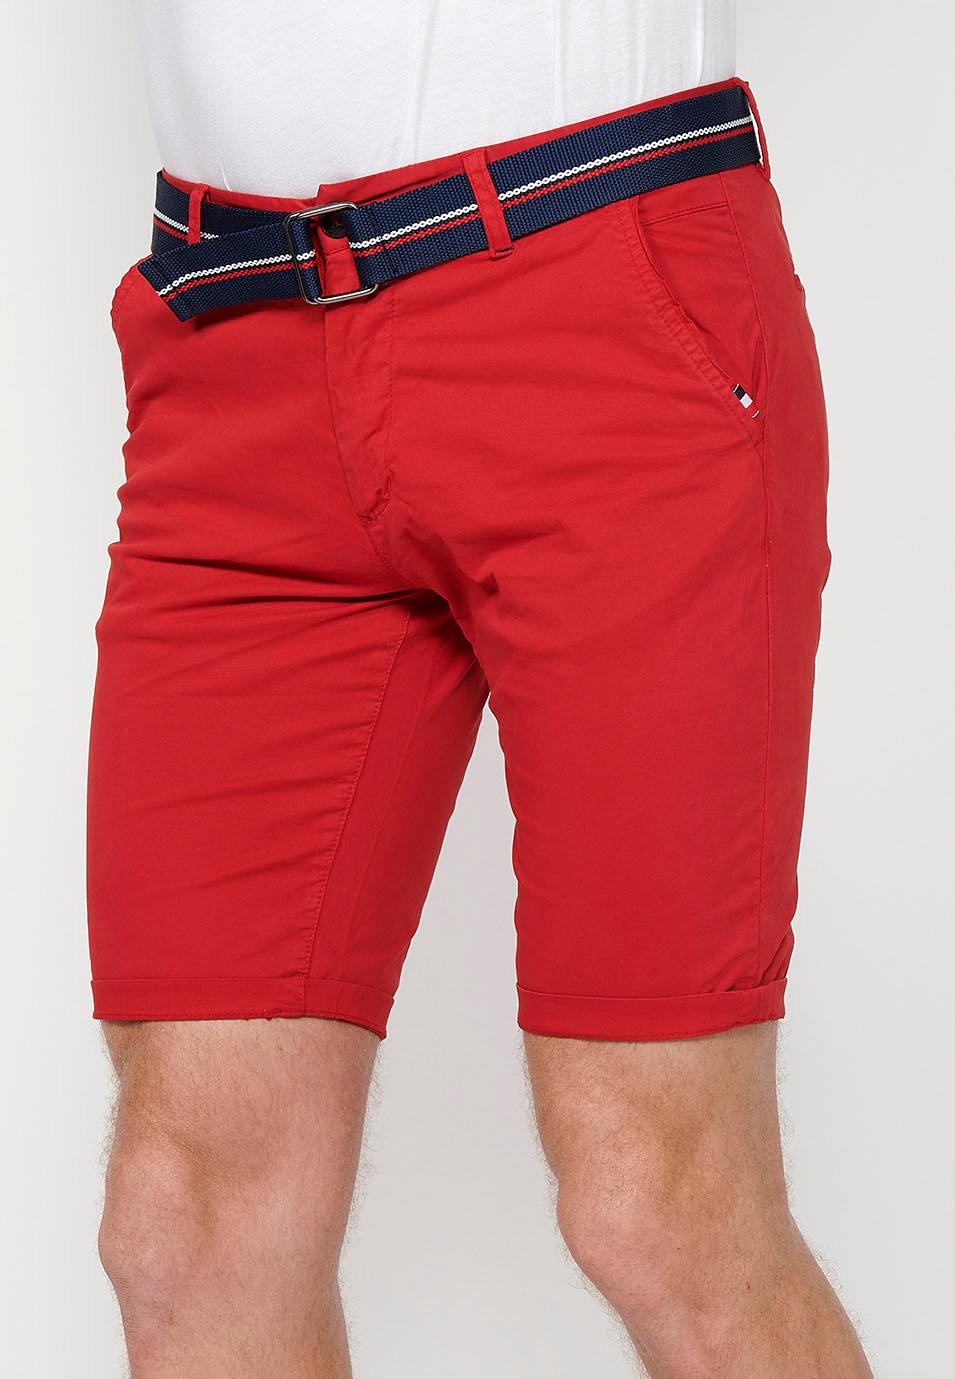 Pantalons curts acabats en volta amb Tancament davanter amb cremallera i botó i cinturó de Color Roig per a Home 3